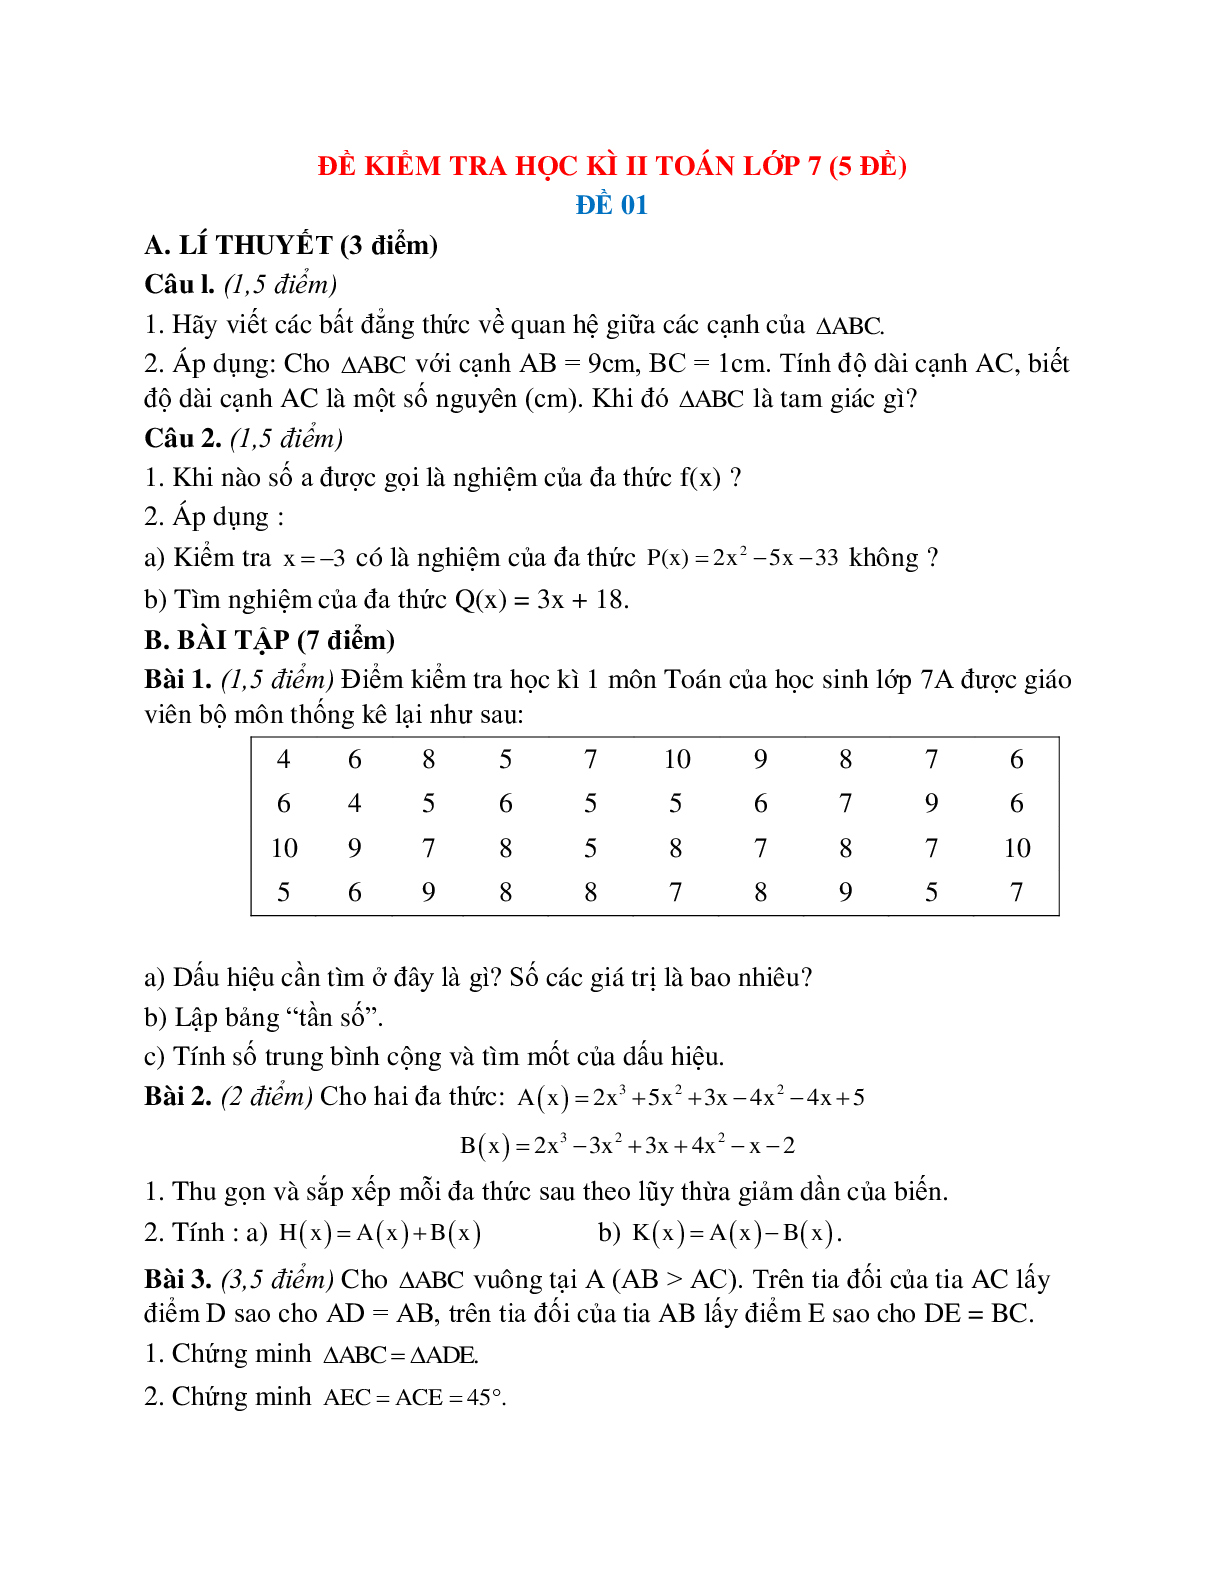 Đề kiểm tra học kì 2 toán lớp 7 (5 đề) (trang 1)